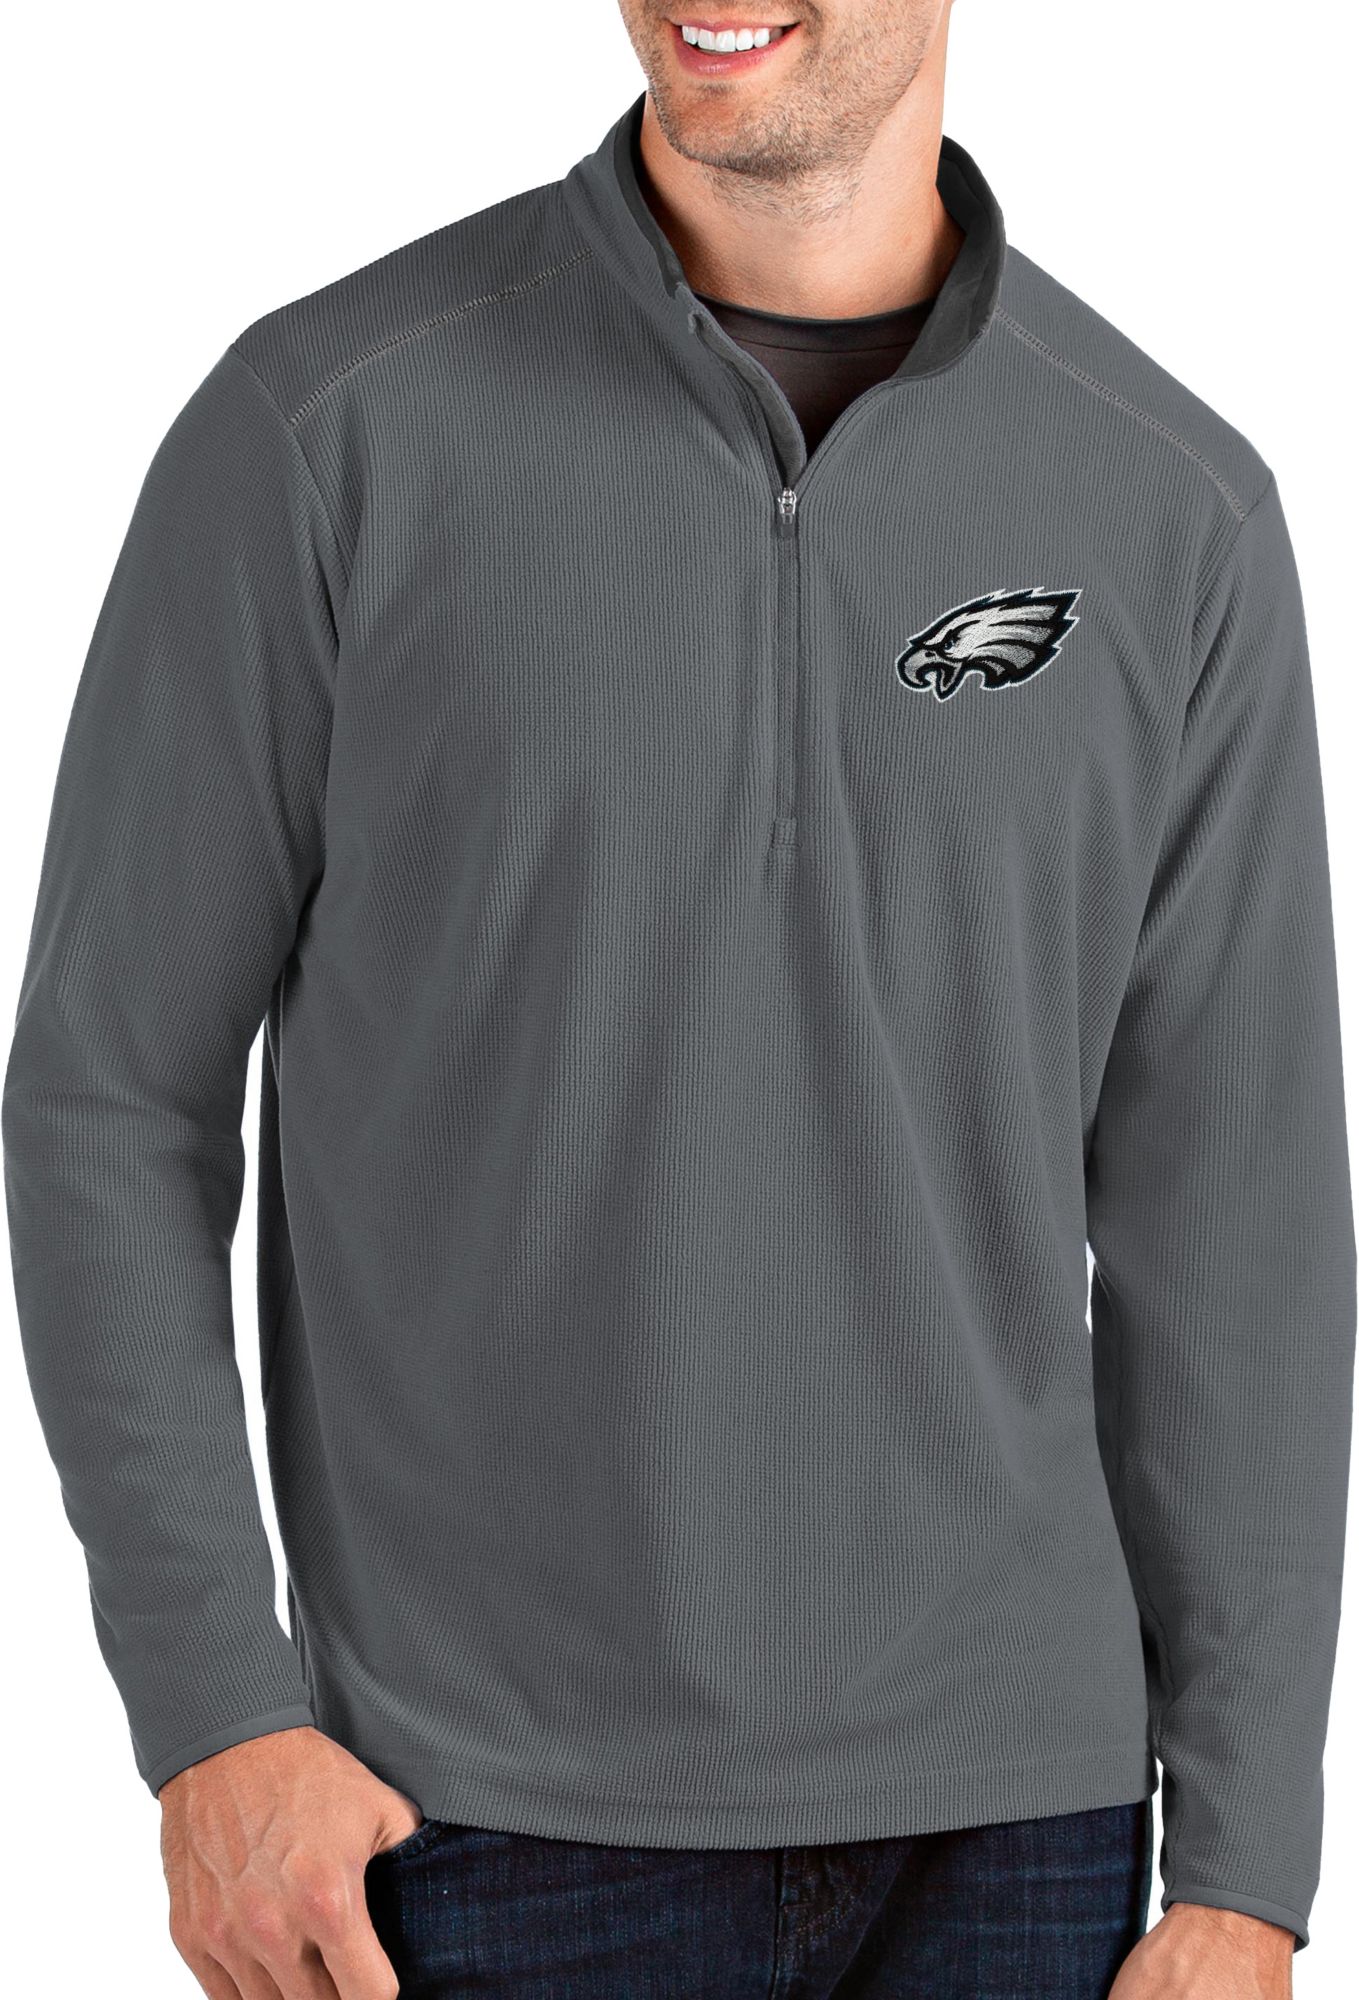 eagles quarter zip sweatshirt